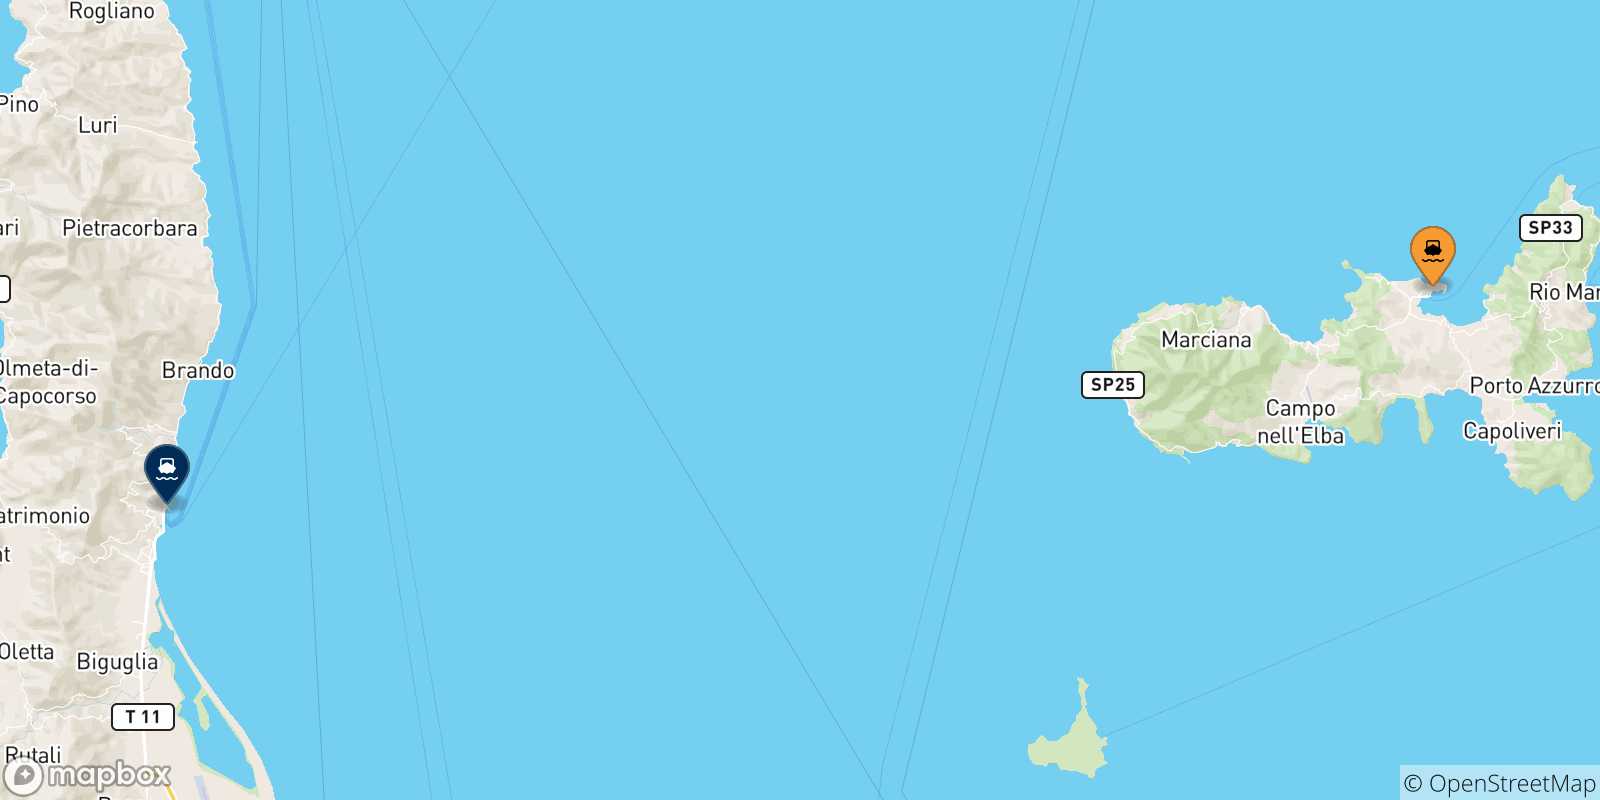 Mappa delle possibili rotte tra Portoferraio e la Corsica